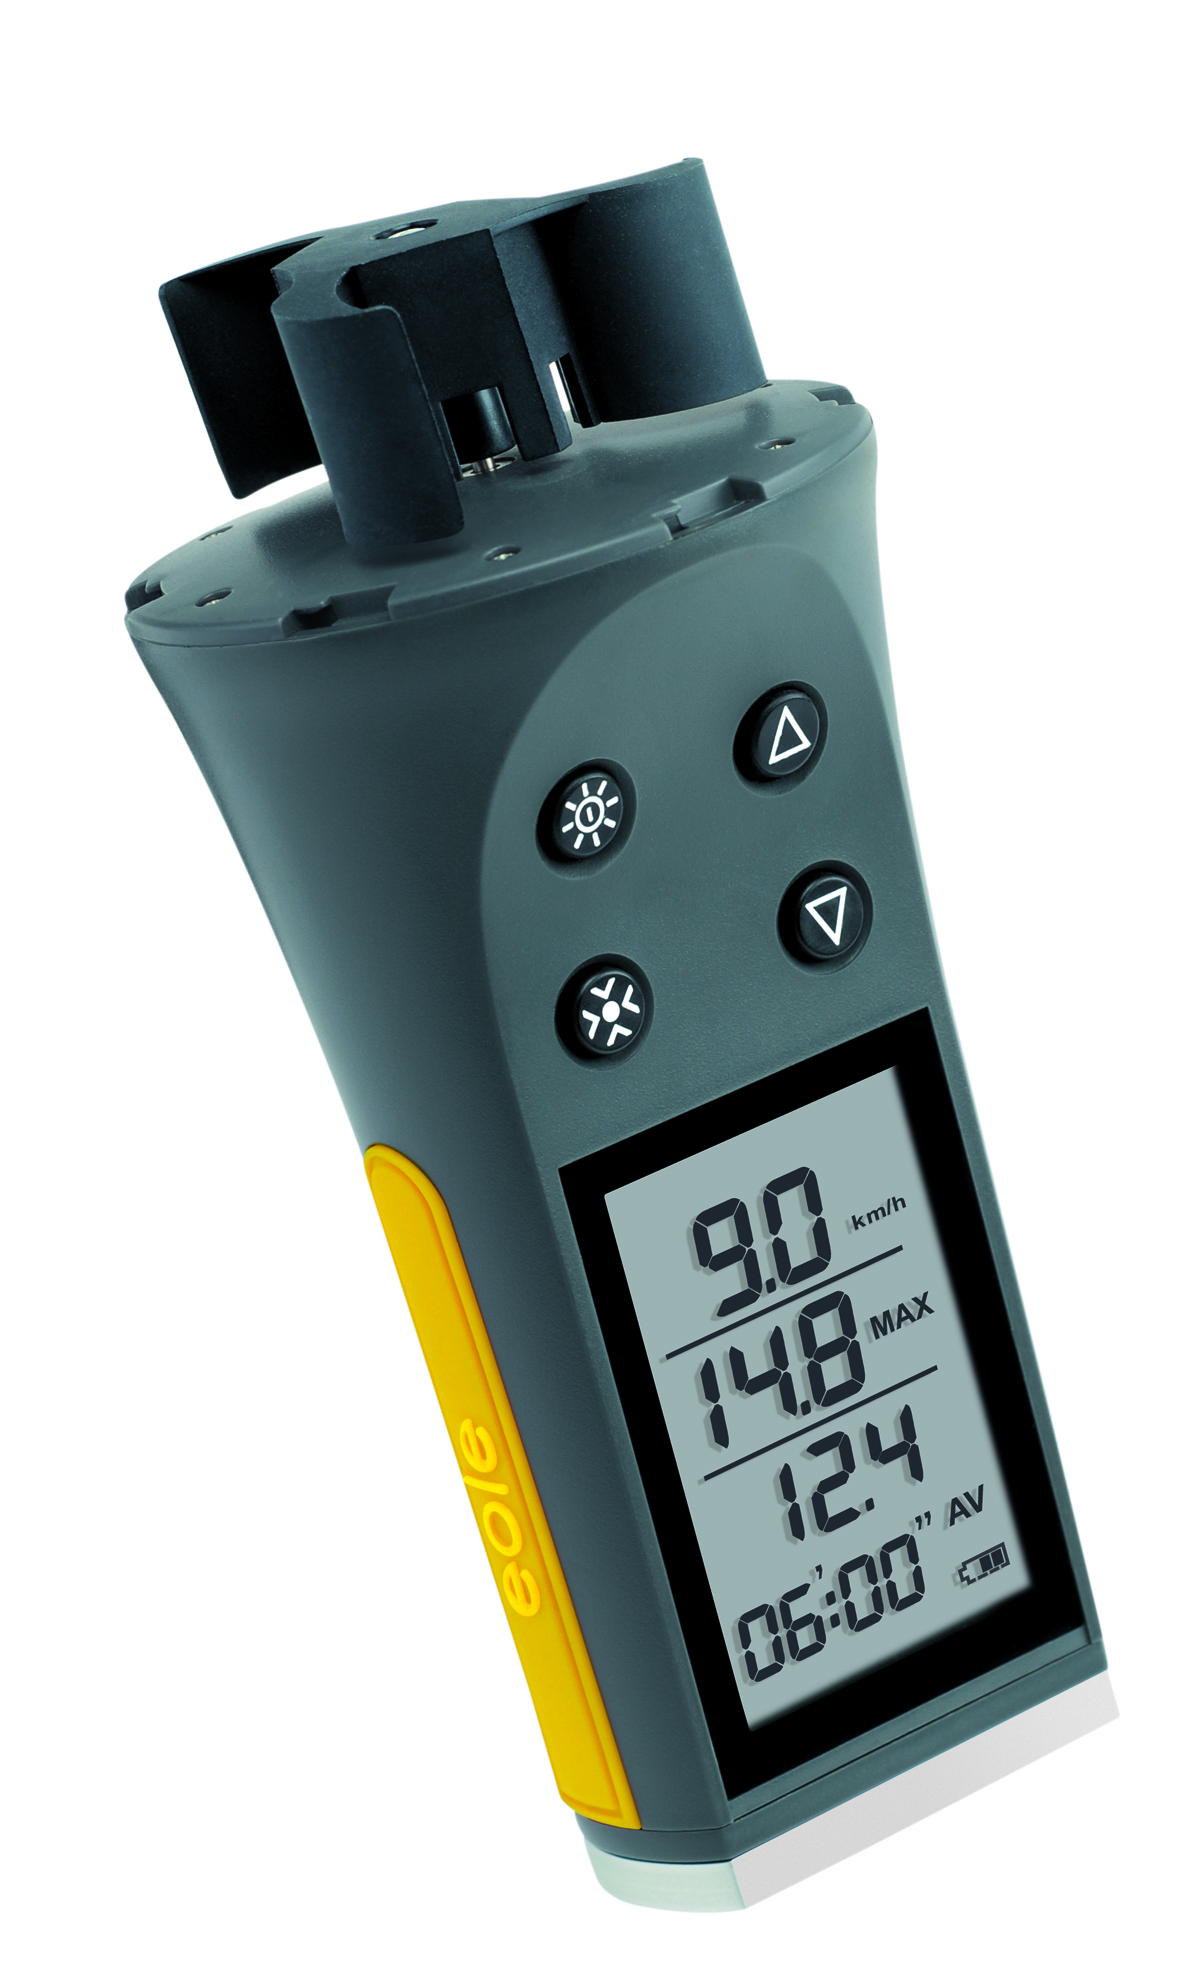 Alta precisione Heayzoki Anemometro Risposta Rapida RM065 Anemometro Digitale Portatile Misuratore di velocità del Vento Strumenti di misurazione del Vento con Display LCD retroilluminato